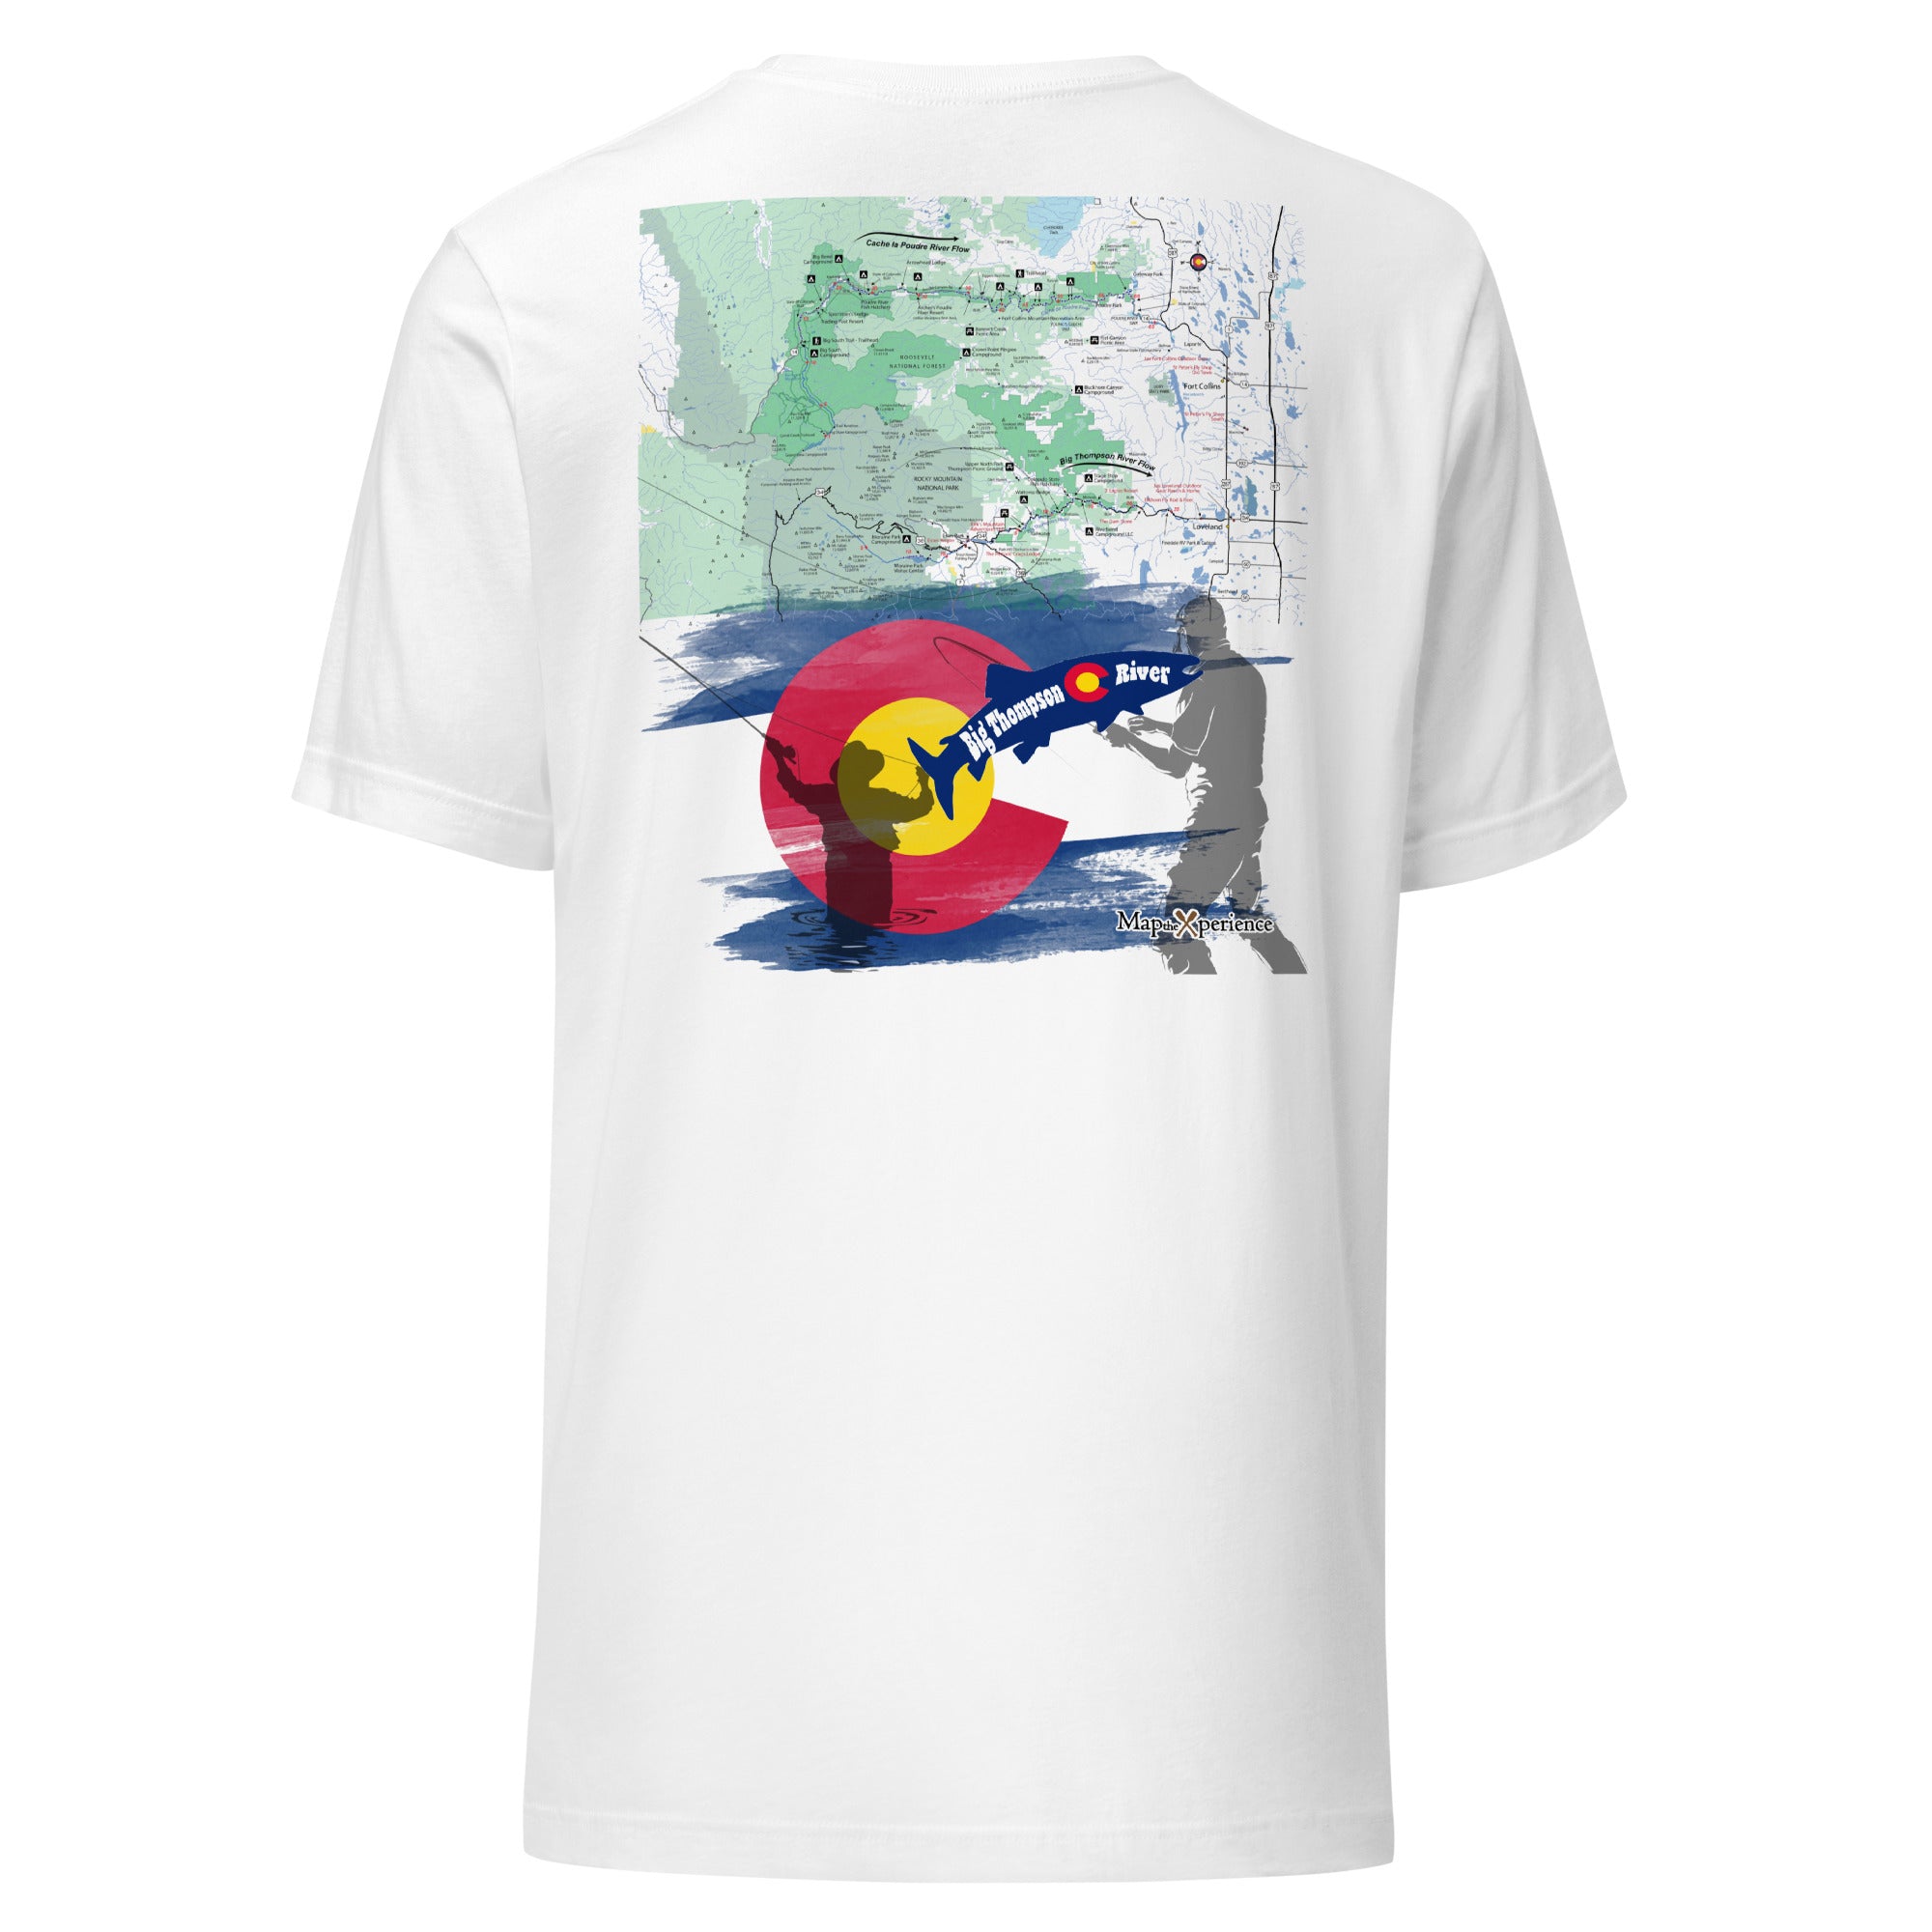 Big Thompson River, Colorado Performance t-shirt